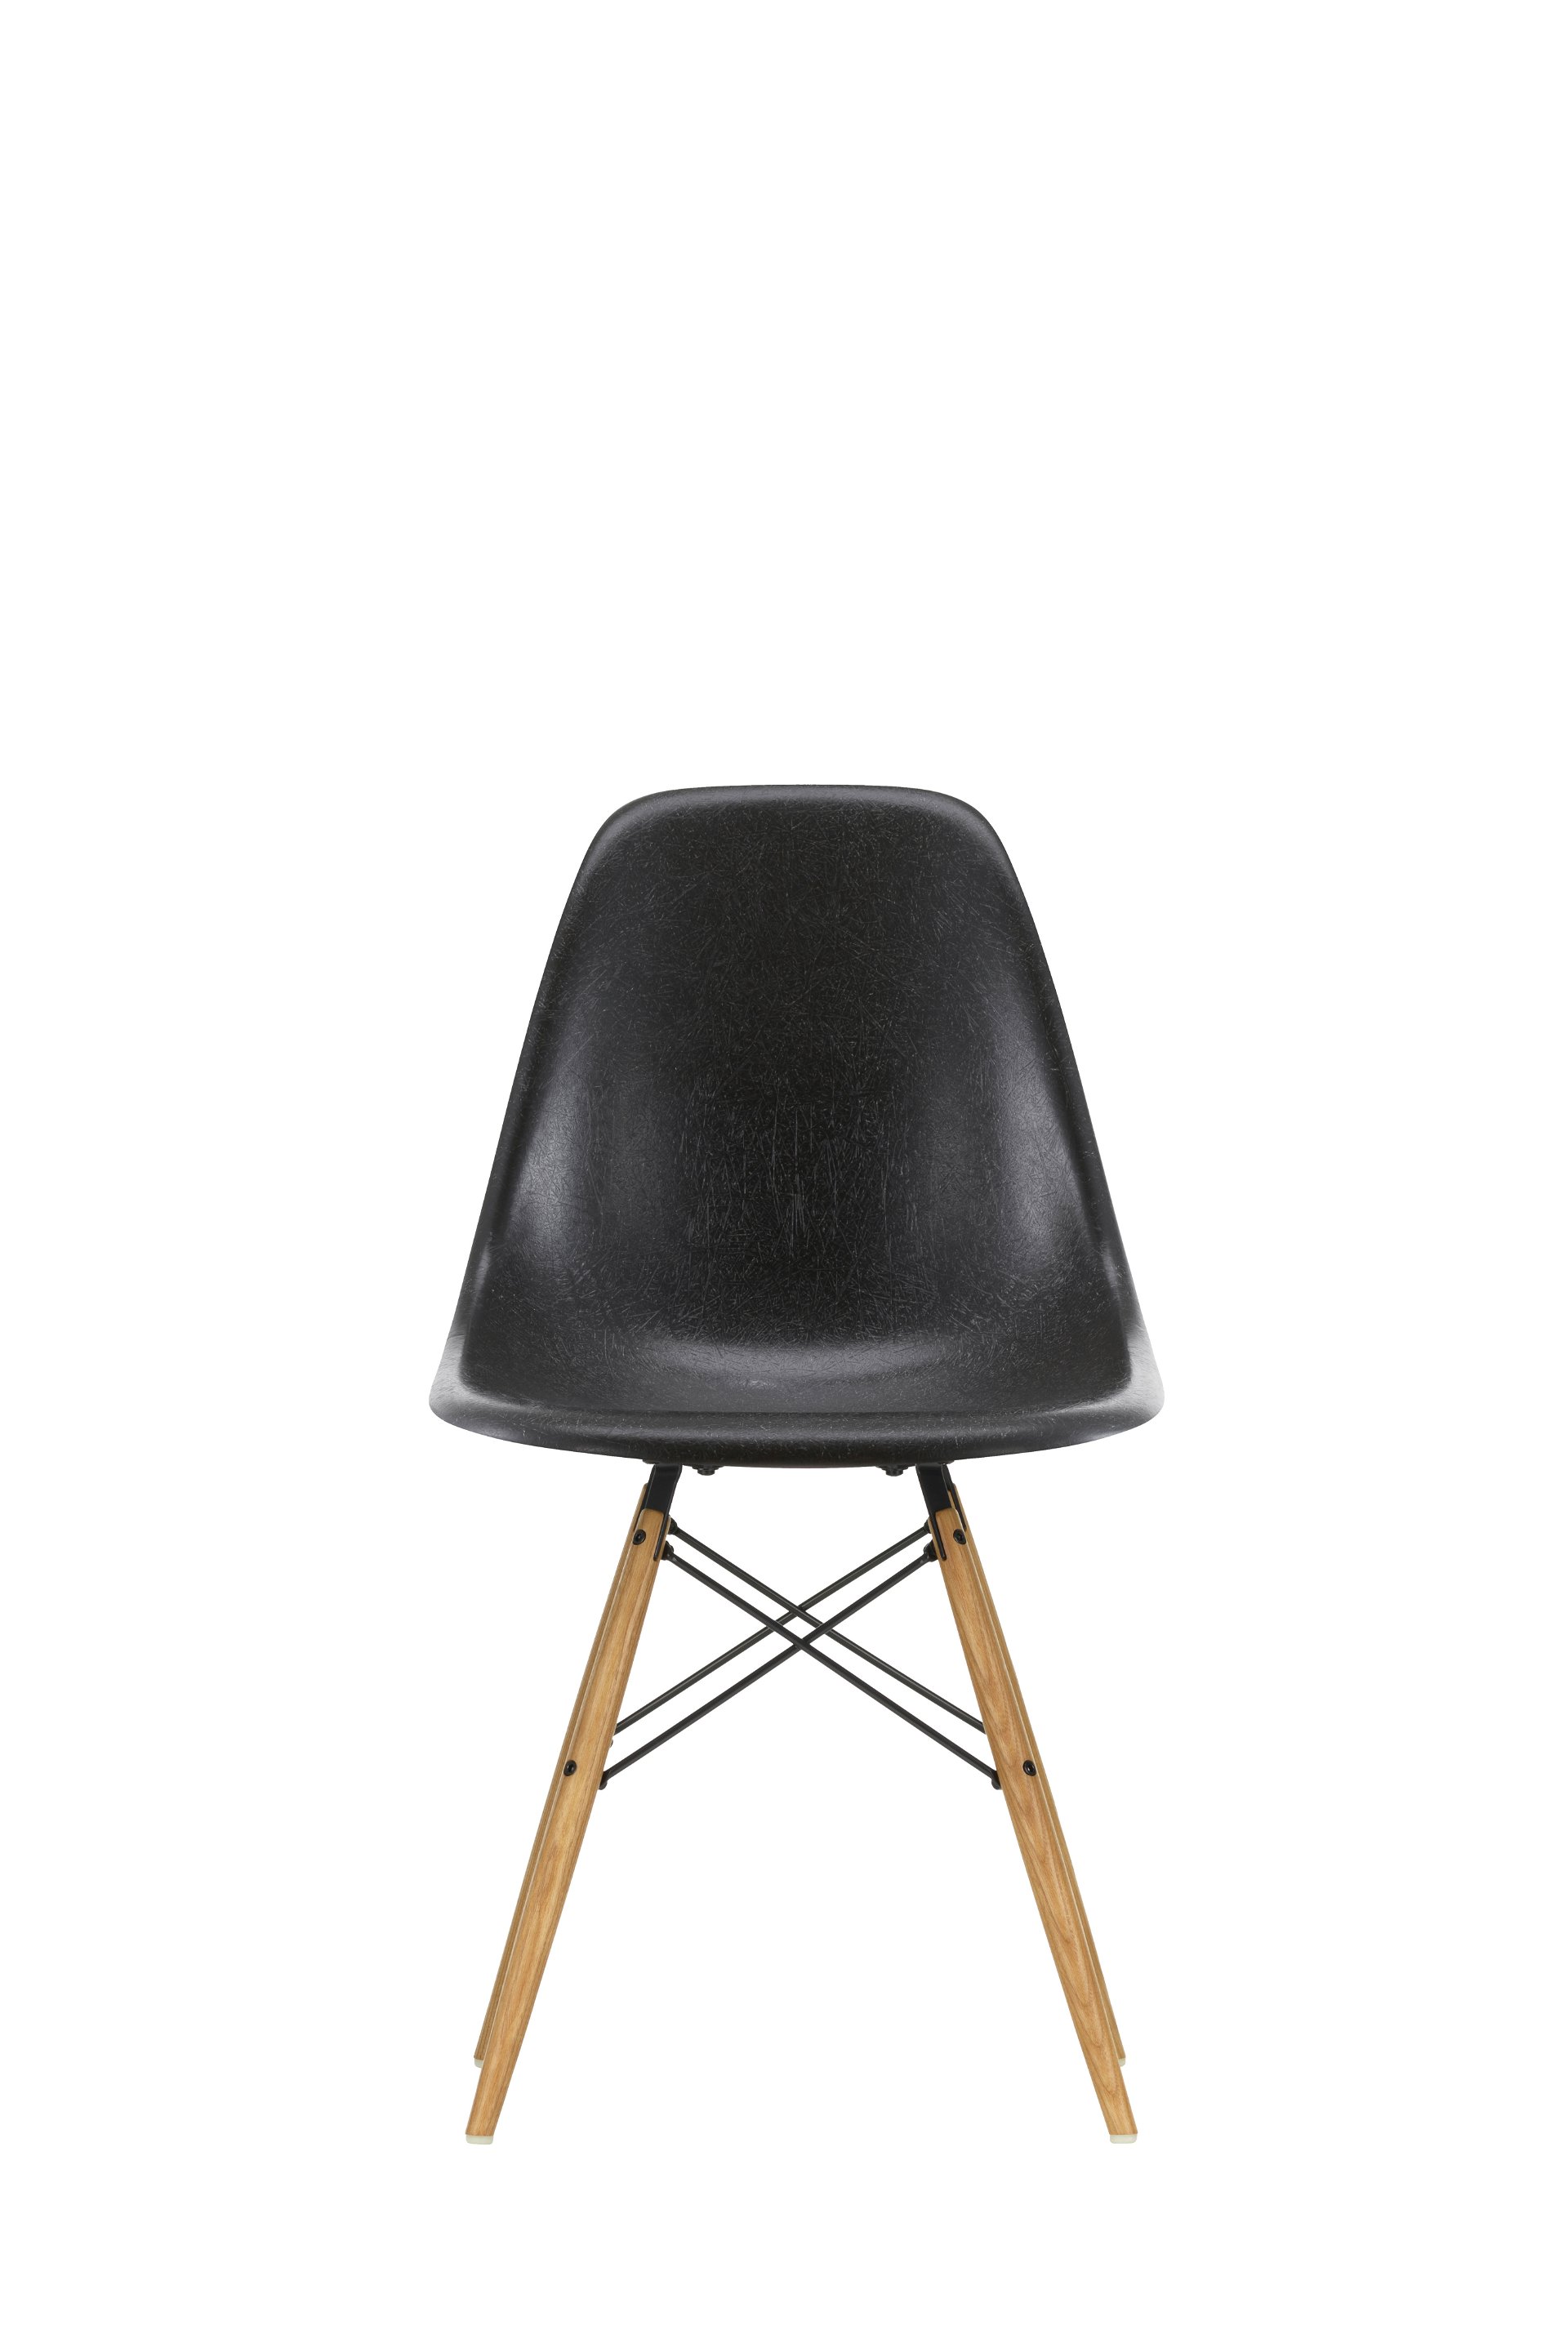 »Eames Fiberglass Side Chair« von Vitra »Den Klassiker gibt es seit Kurzem wieder in der originalen Fiberglas-Technik. Das verleiht der Sitzschale eine wunderbare Haptik und optische Tiefe.«